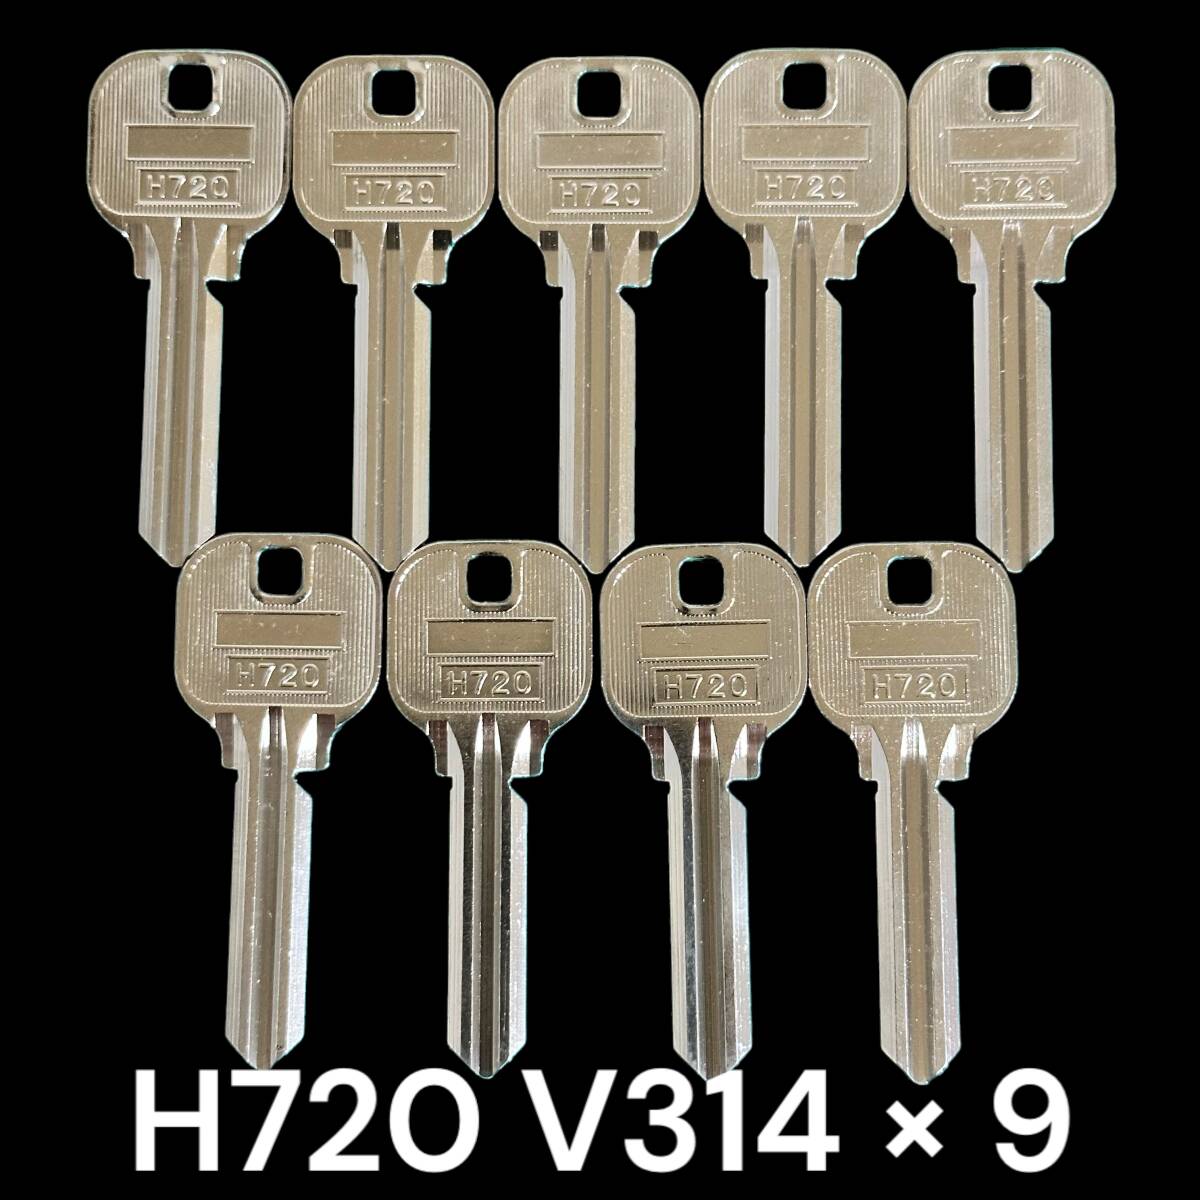 T472 ブランクキー H720 THL M314 9本 合鍵 スペアキー カギ かぎ の画像1